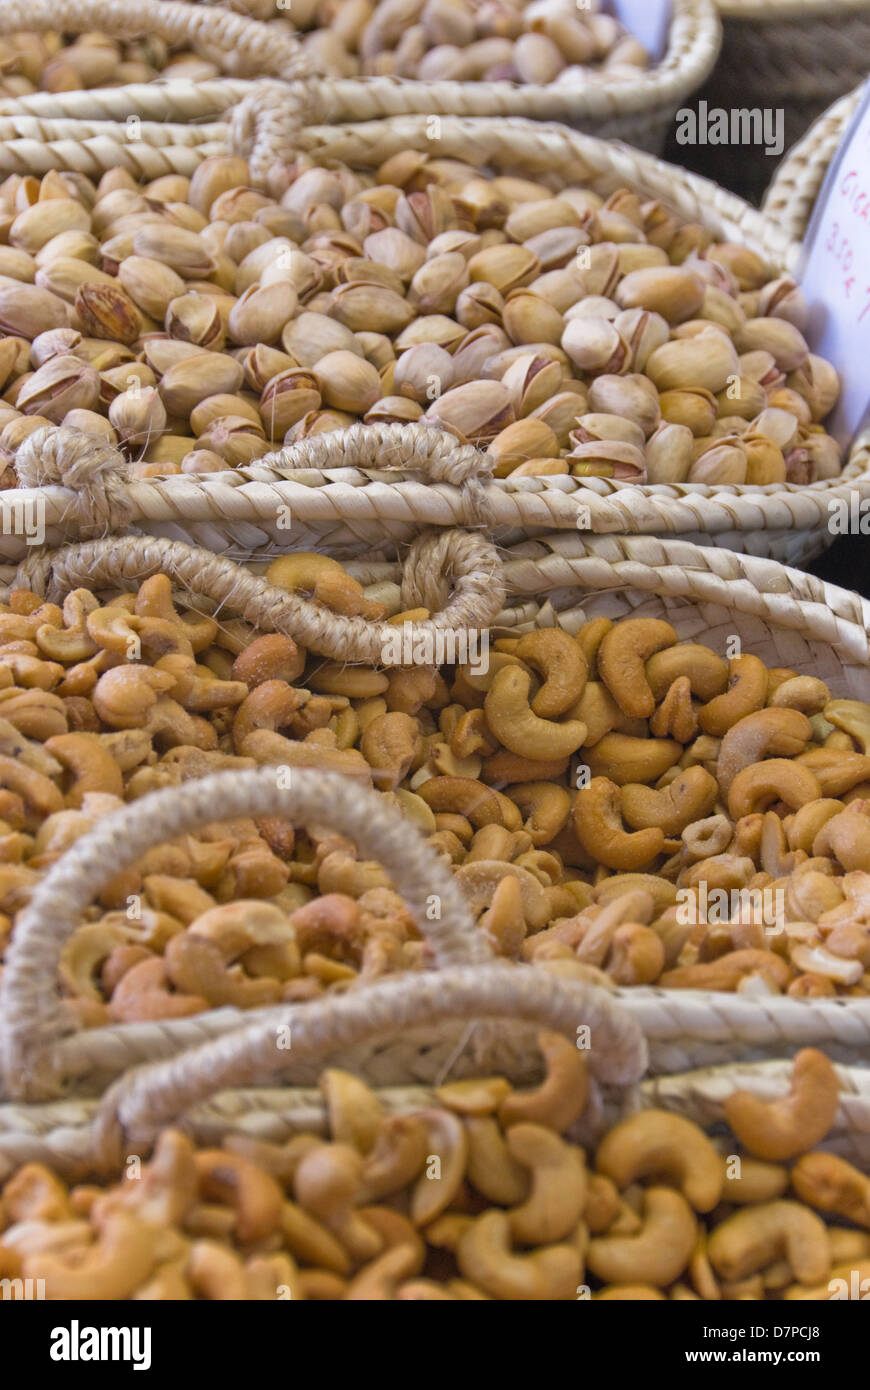 Market in Port de Pollenca, Nüsse und Pistazien, pistachios and Nuts, nuts and pistachios Stock Photo